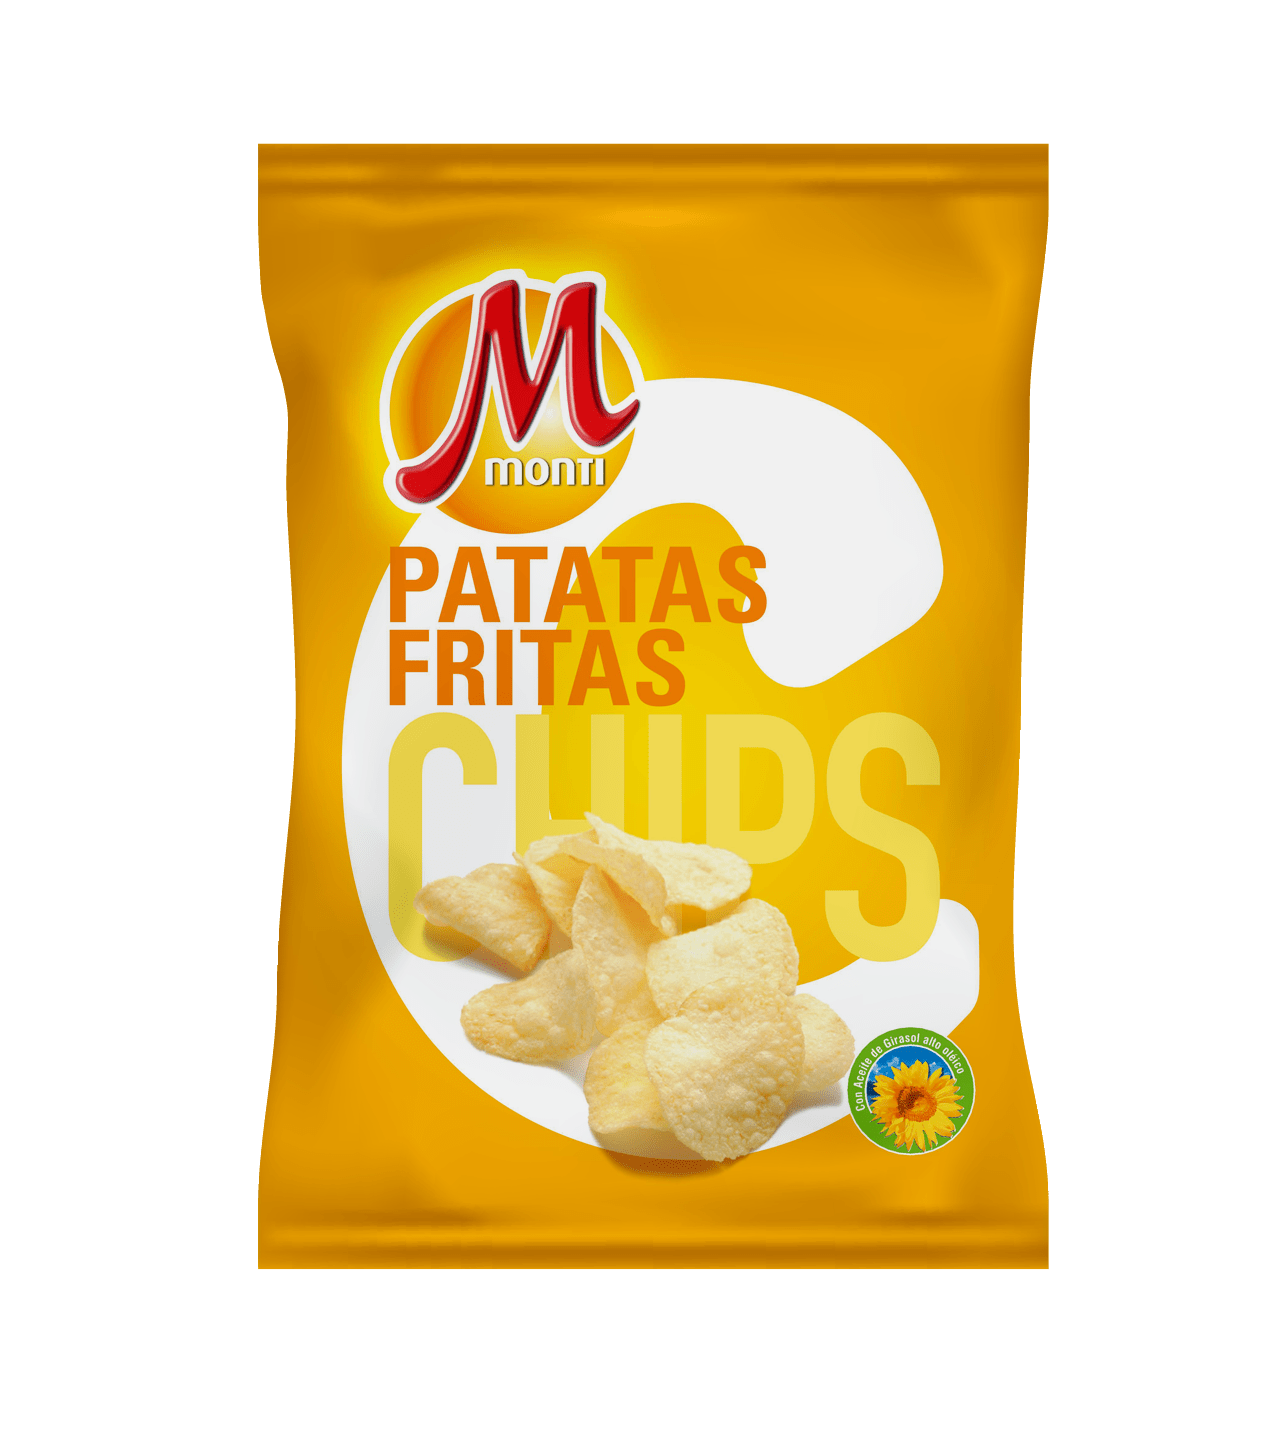 Espejismo Apariencia Viento fuerte El origen de las patatas fritas de bolsa - I Parte - Monti